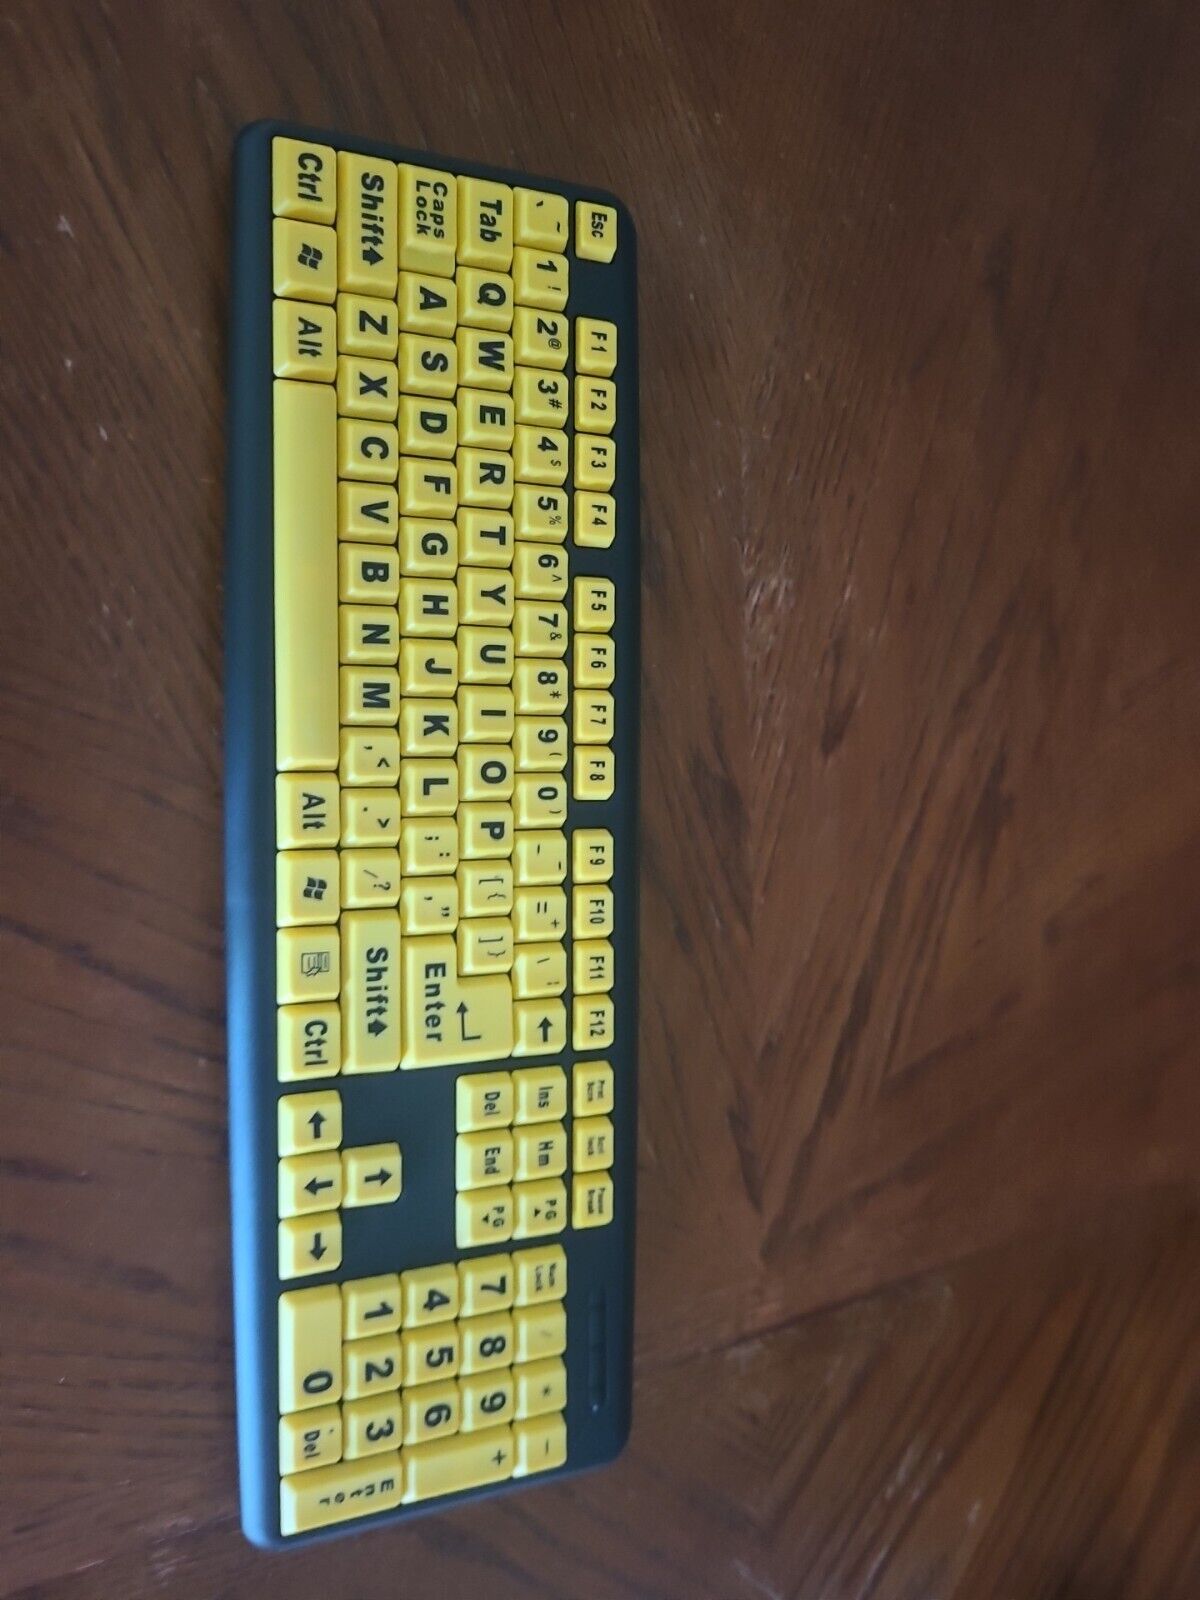 EZ Eyes Keyboard Large Print Yellow Keys - Visual Impaired - New Sealed 